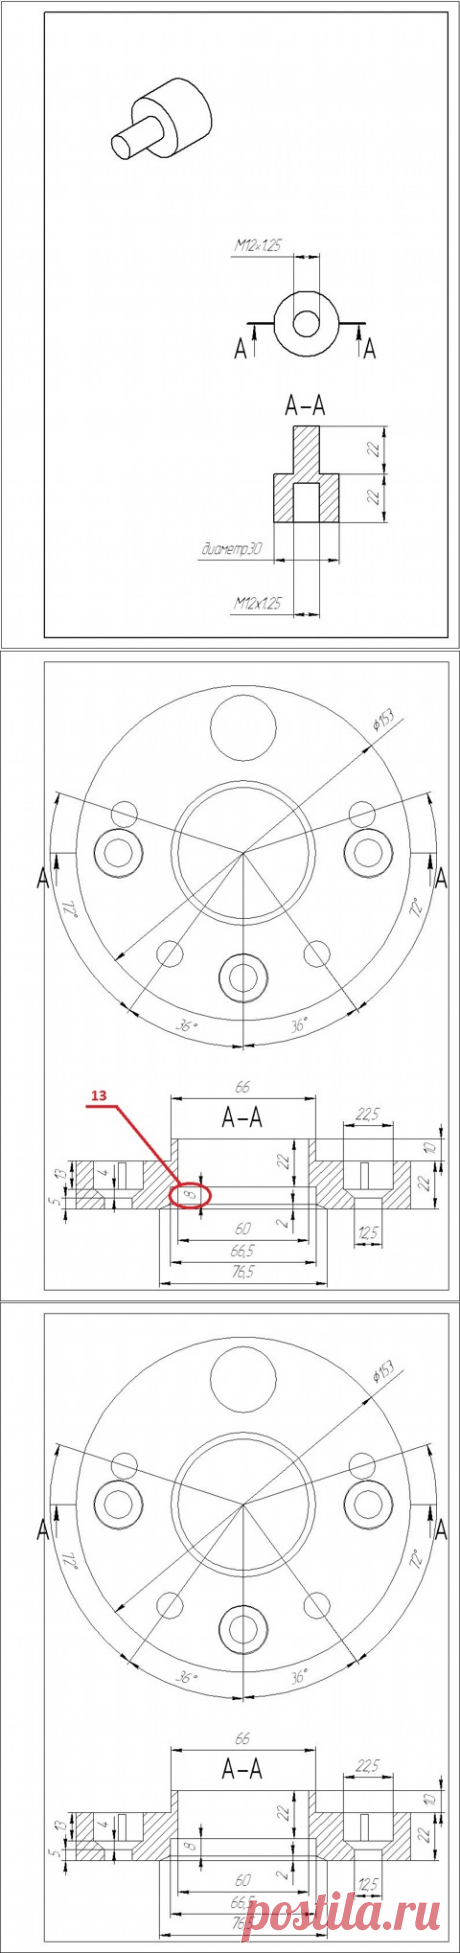 Колесные проставки с 4*114,3 на 5*114,3 (чертежи) — бортжурнал Nissan Almera Classic КАСТОМ | DRIVE2